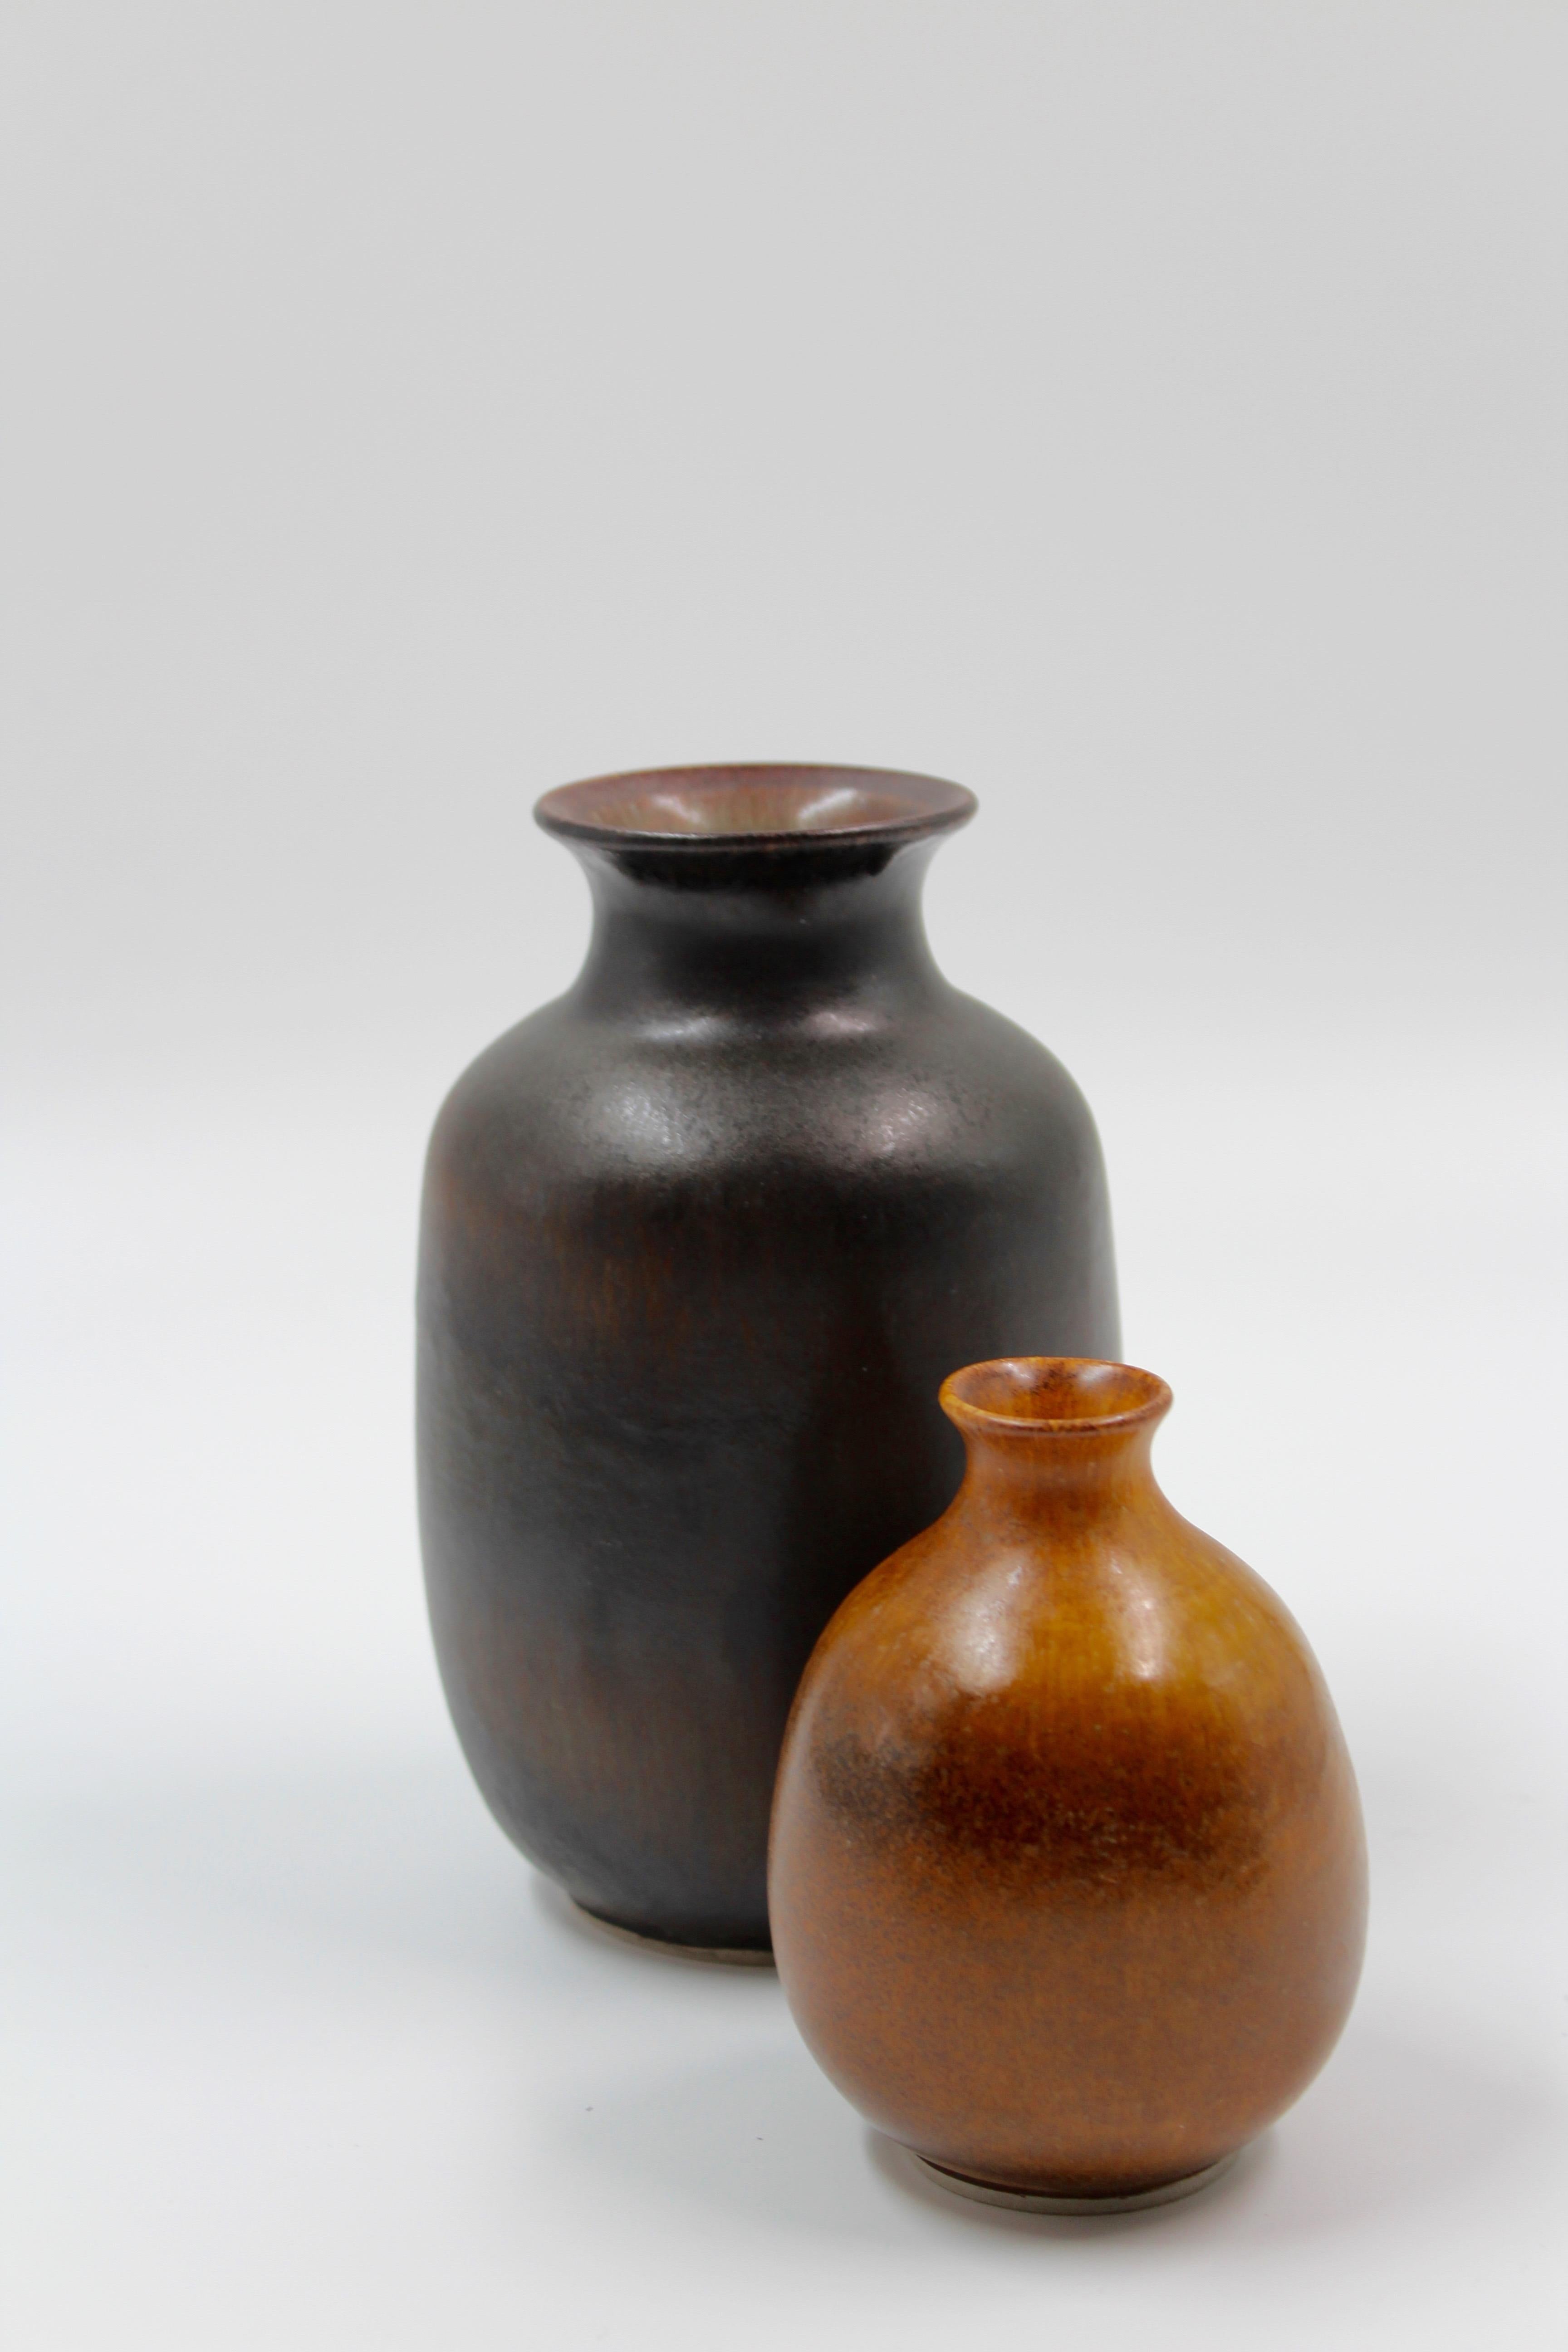 20th Century Midcentury Ceramic Vases by Egon Larsson, Höganäs Keramik, 1950s For Sale